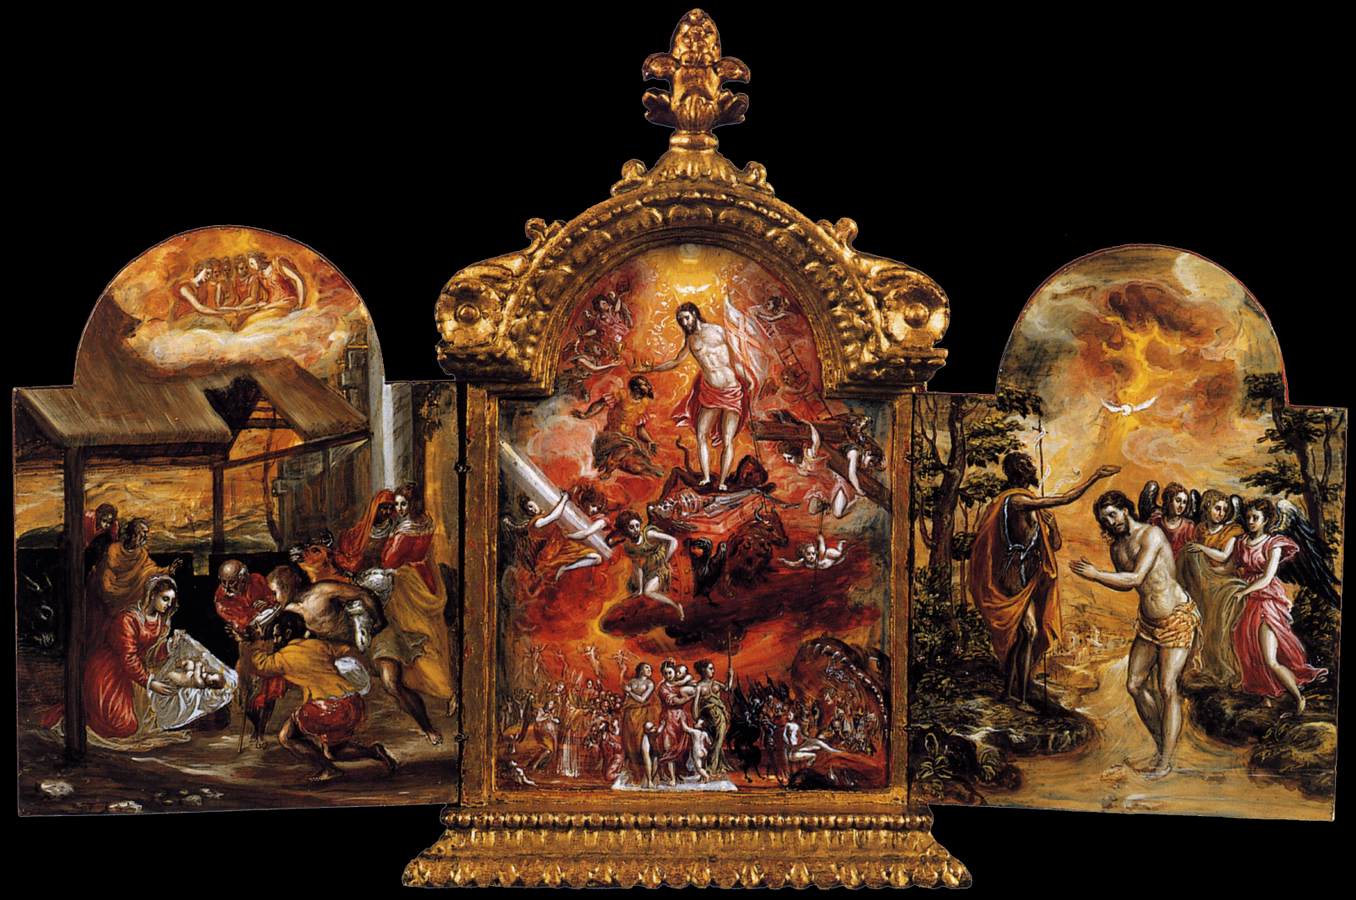 El+Greco-1541-1614 (56).jpg